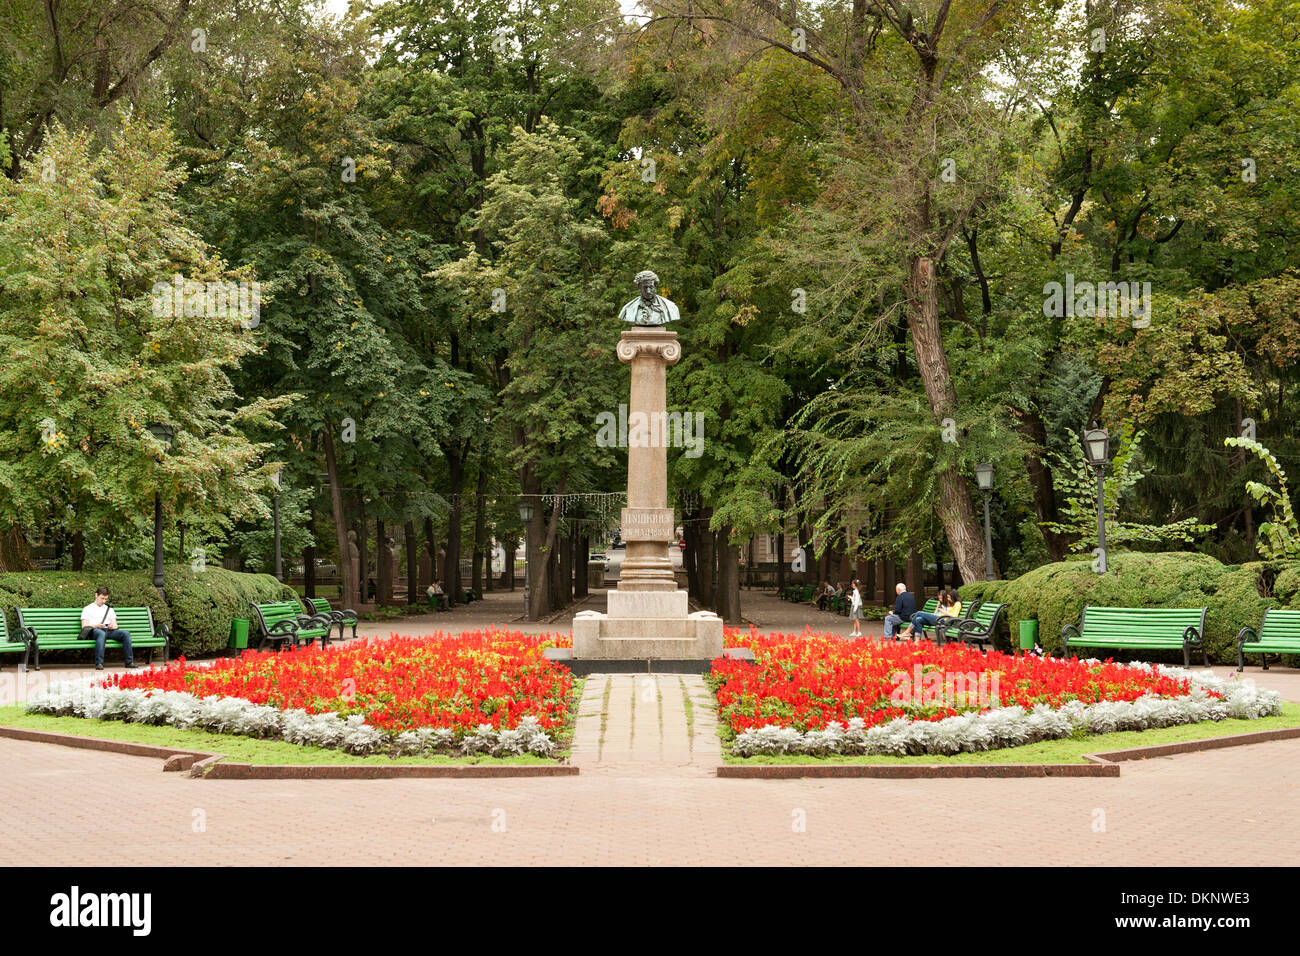 Büste von Aleksandr Pushkin im Parcul Stefan Cel Mare (Stephan der große Park) in Chisinau, Hauptstadt der Republik Moldau in Osteuropa. Stockfoto